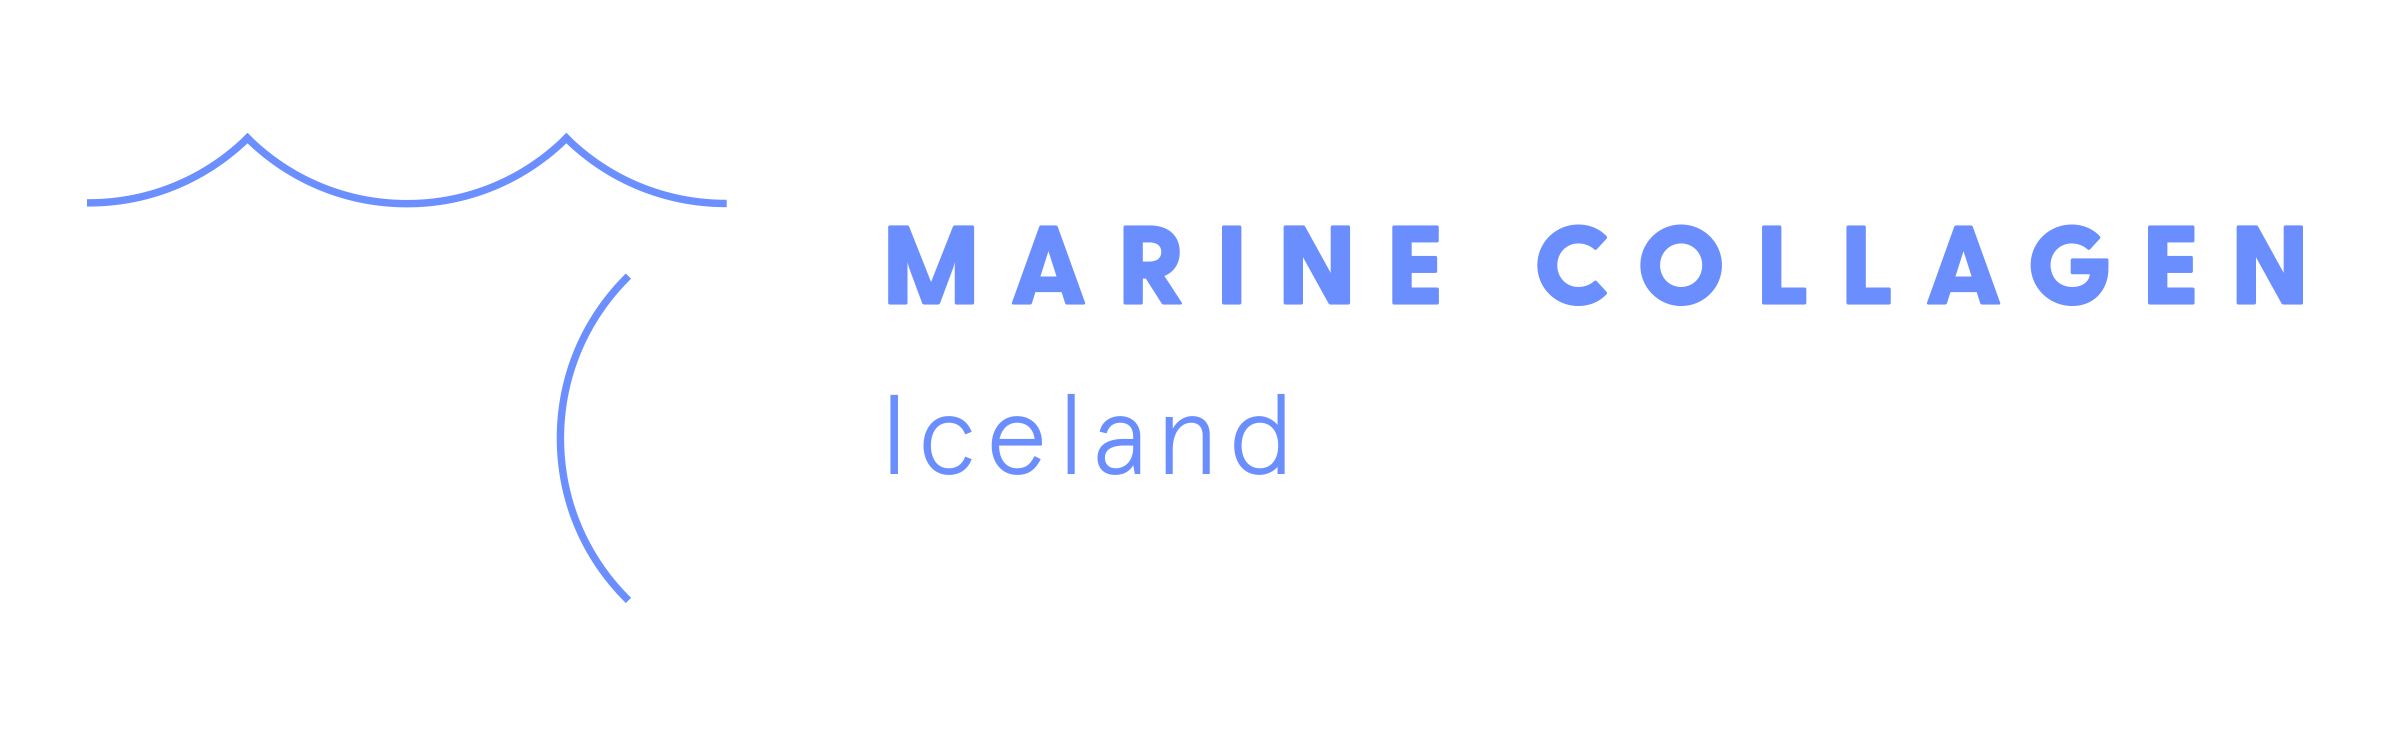 Marine Collagen from Iceland